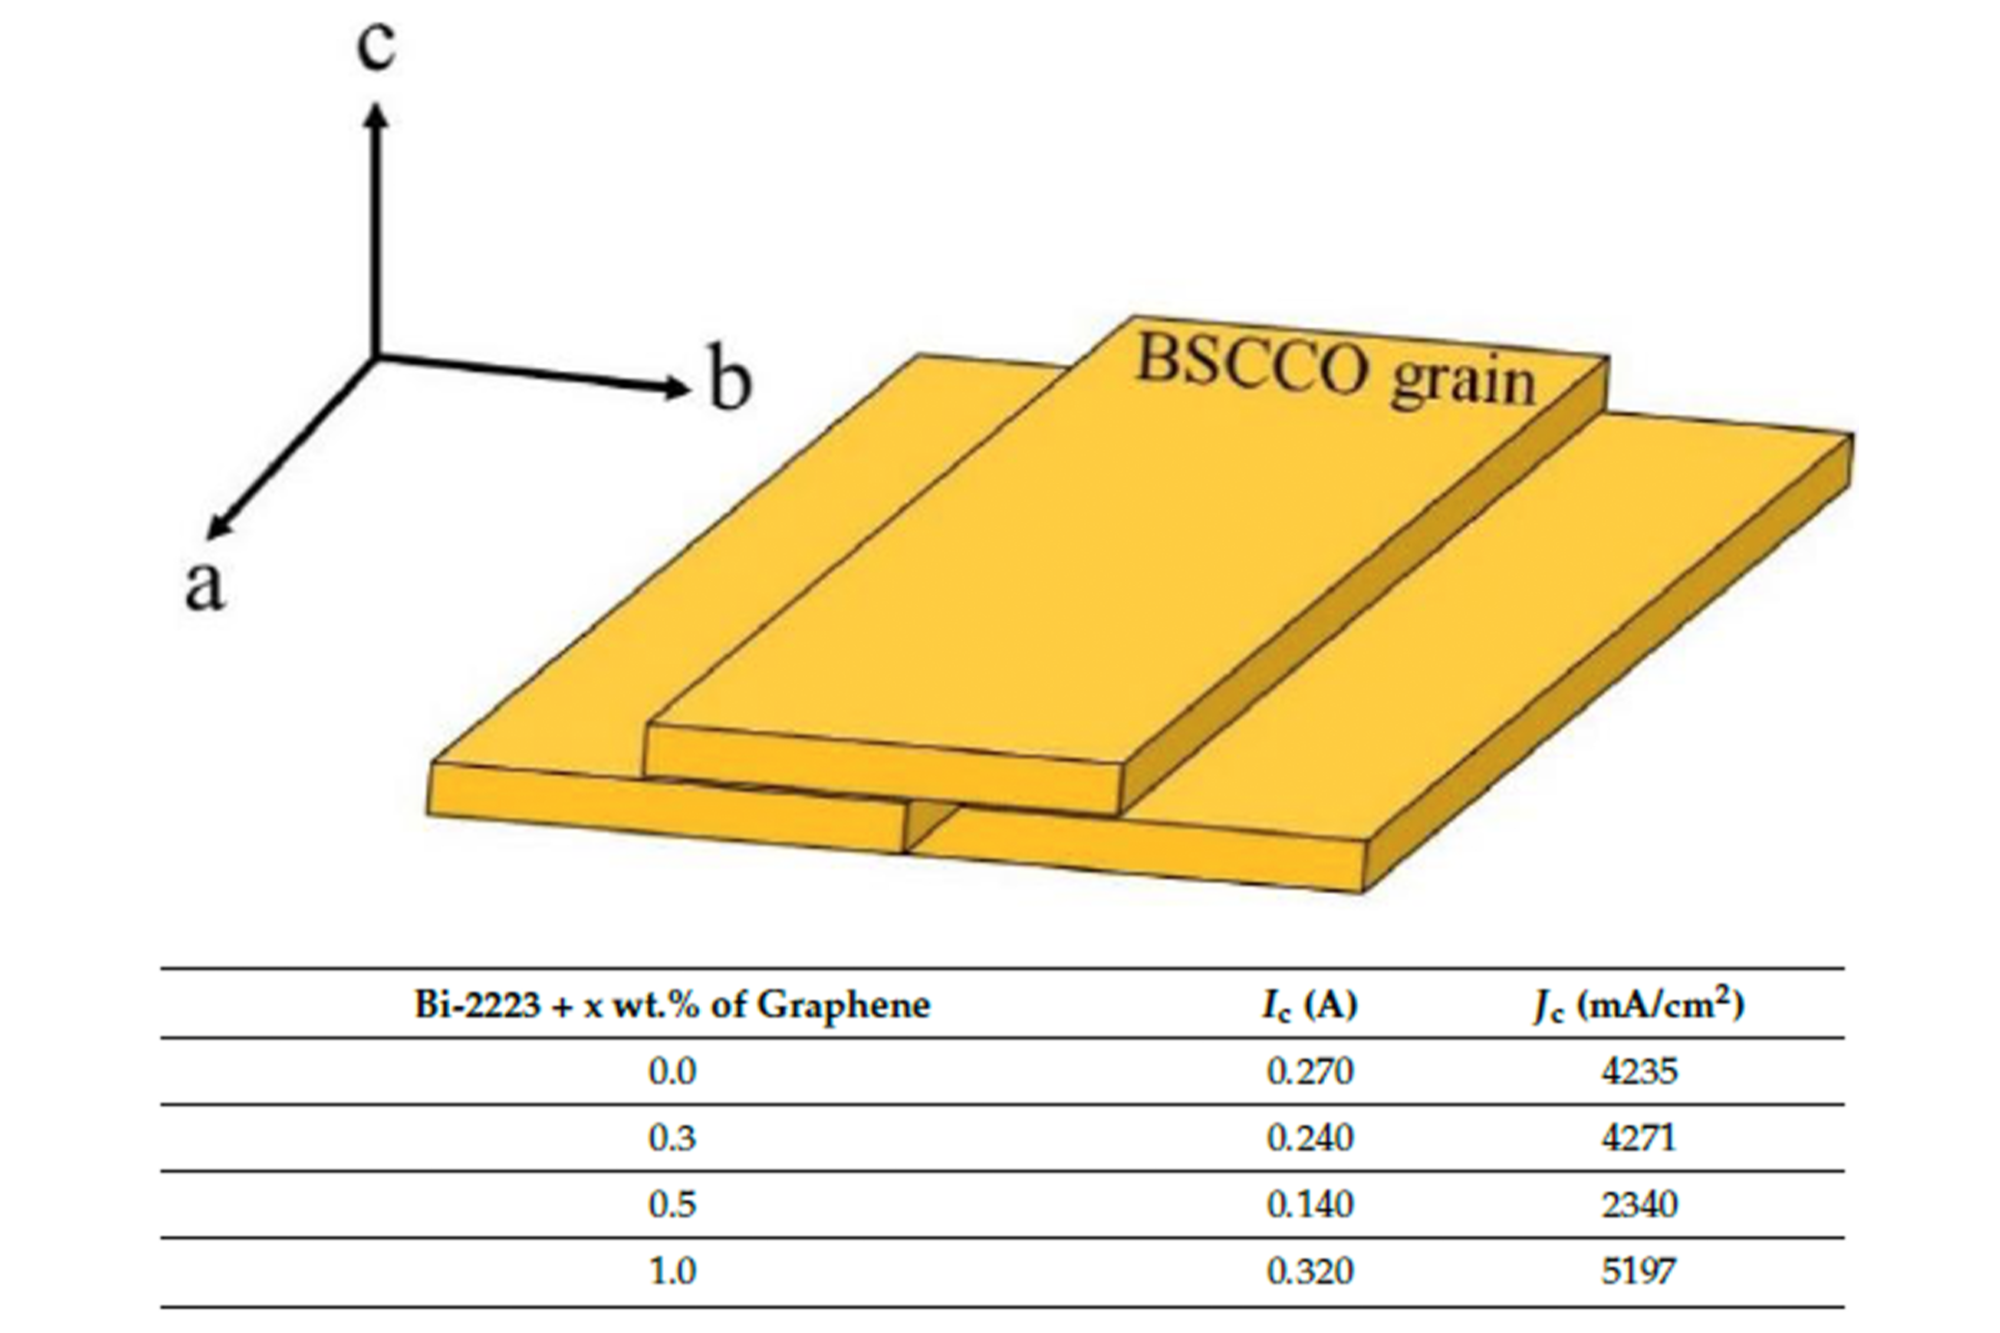 添加石墨烯纳米颗粒可提高Bi-2223的超导性能